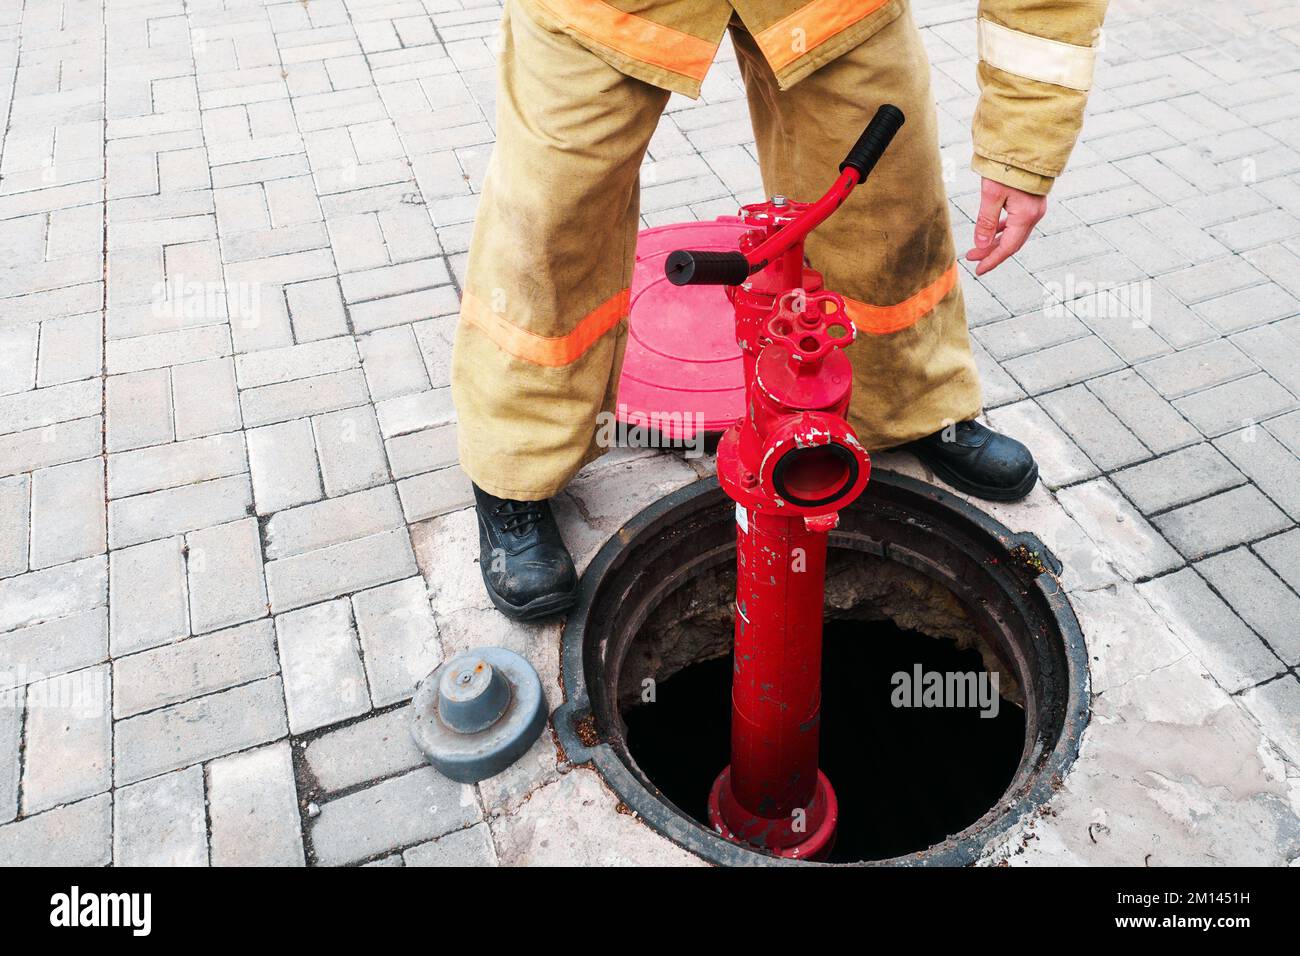 Un pompier ou un secouriste installe une borne incendie dans un puits ouvert. Travail de pompier en cas d'incendie. La formation et la pratique des actions en cas d'incendie. Arrière-plan... Banque D'Images